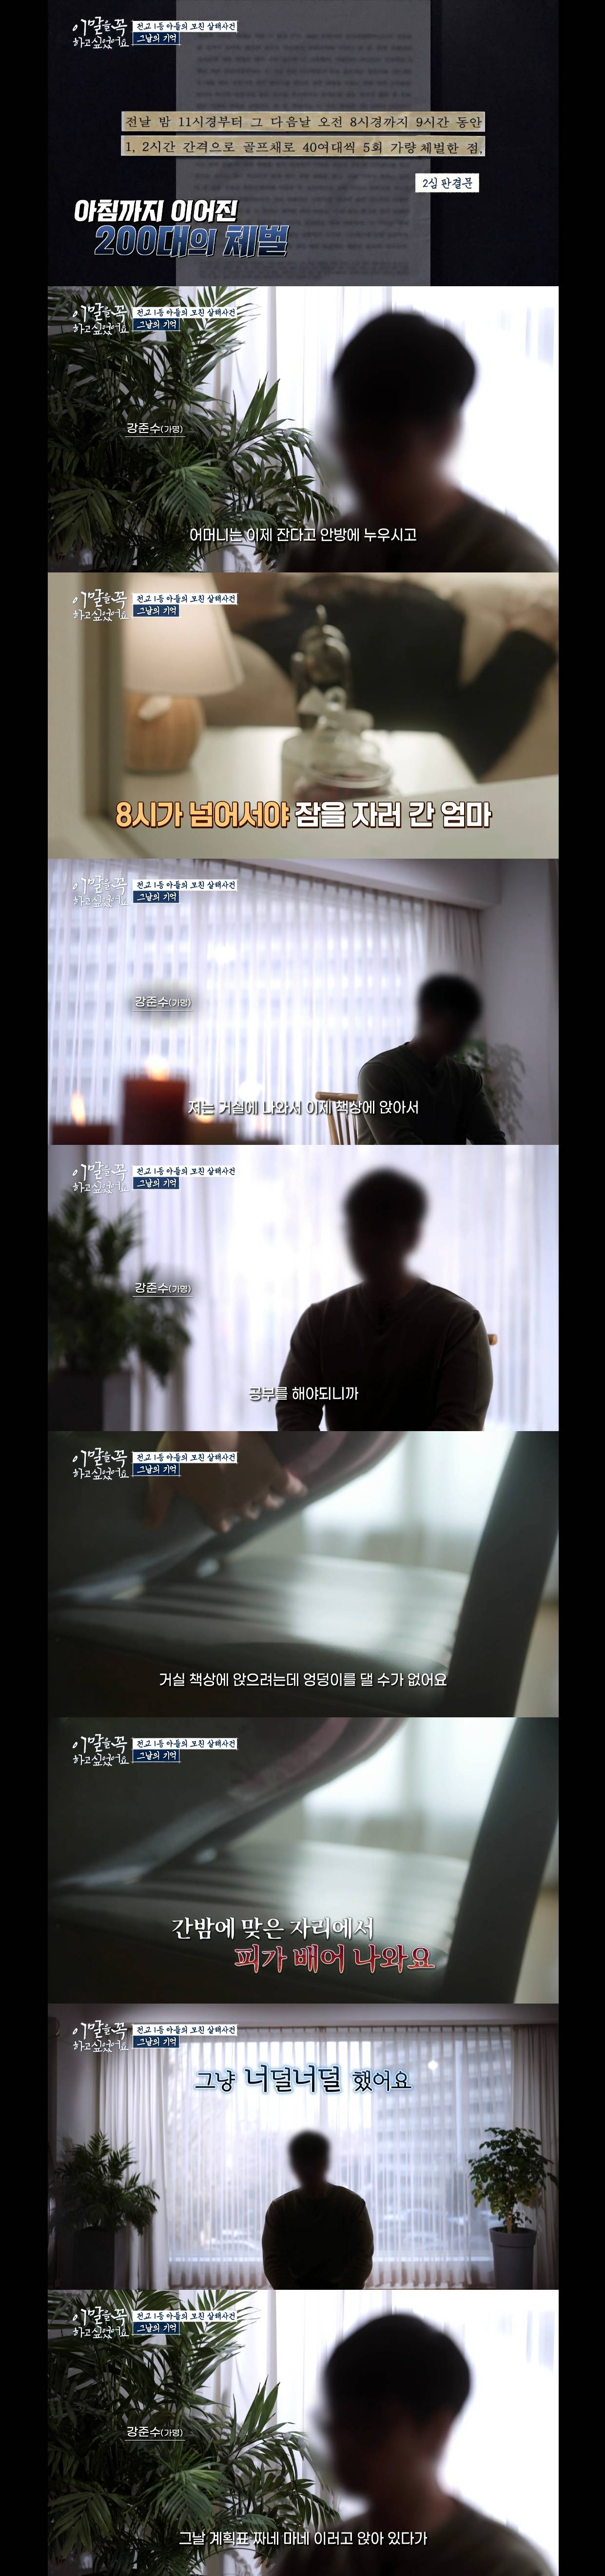 난리났다던 tvN 새 프로그램 살인 가해자 인터뷰 캡쳐.jpg | 인스티즈